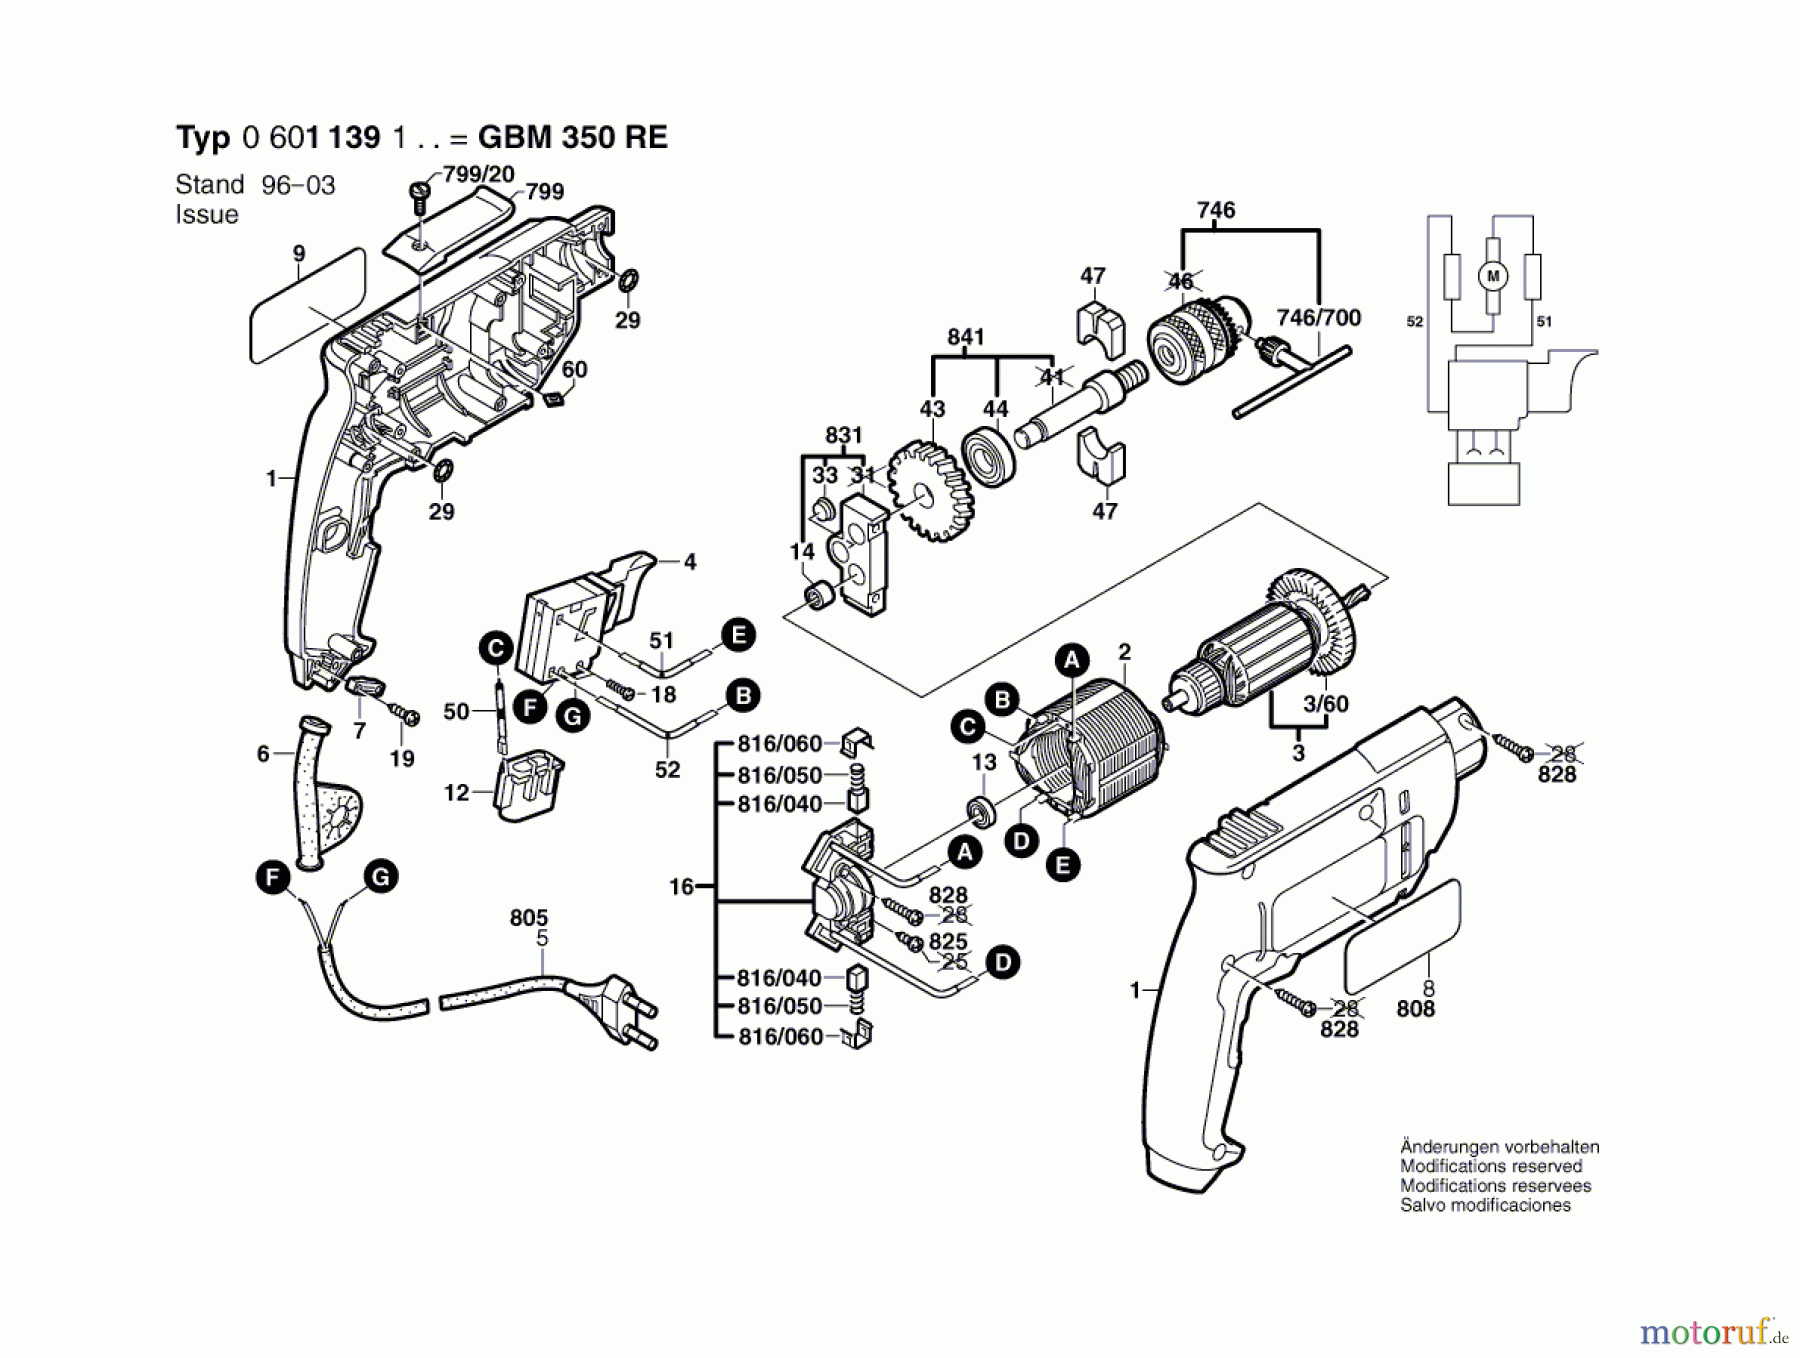  Bosch Werkzeug Bohrmaschine GBM 350 Seite 1